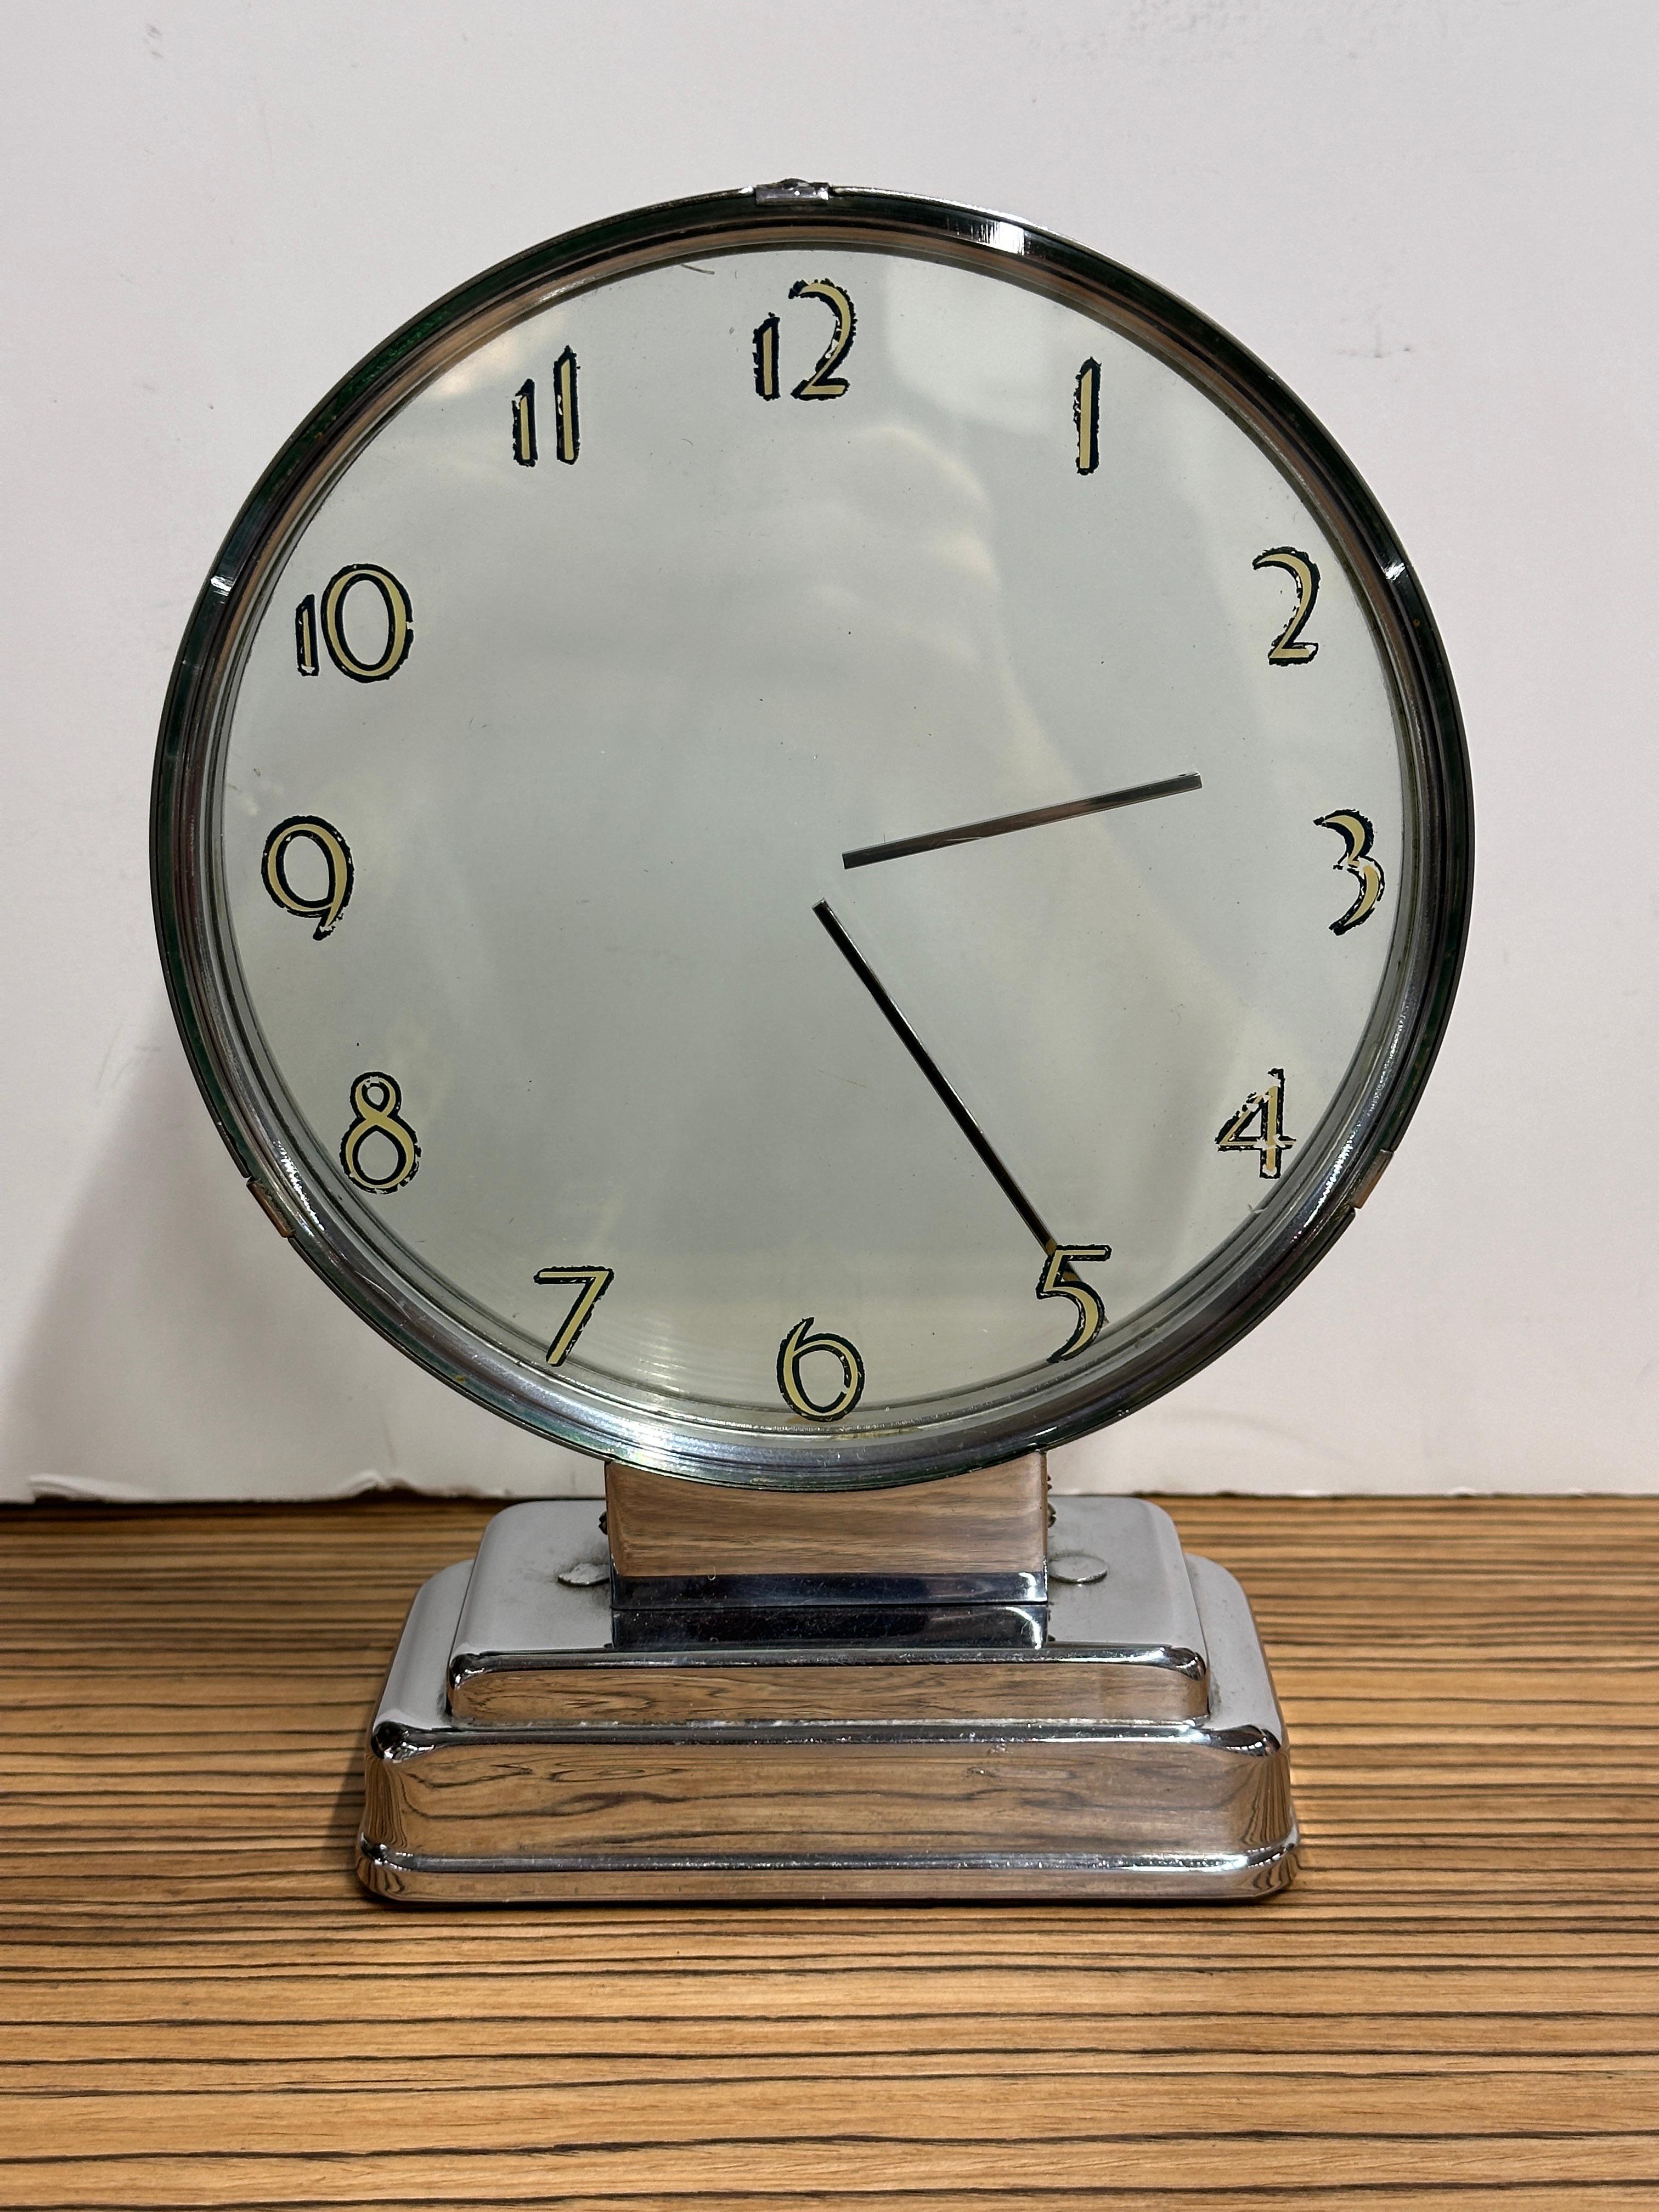 Une horloge étonnante conçue par Etalage Reclame. L'horloge date du début des années 1940 ou de la fin des années 1930. Il s'agit d'une horloge mystérieuse. Il comporte deux disques à l'intérieur desquels des mains sont fixées sur les plaques qui